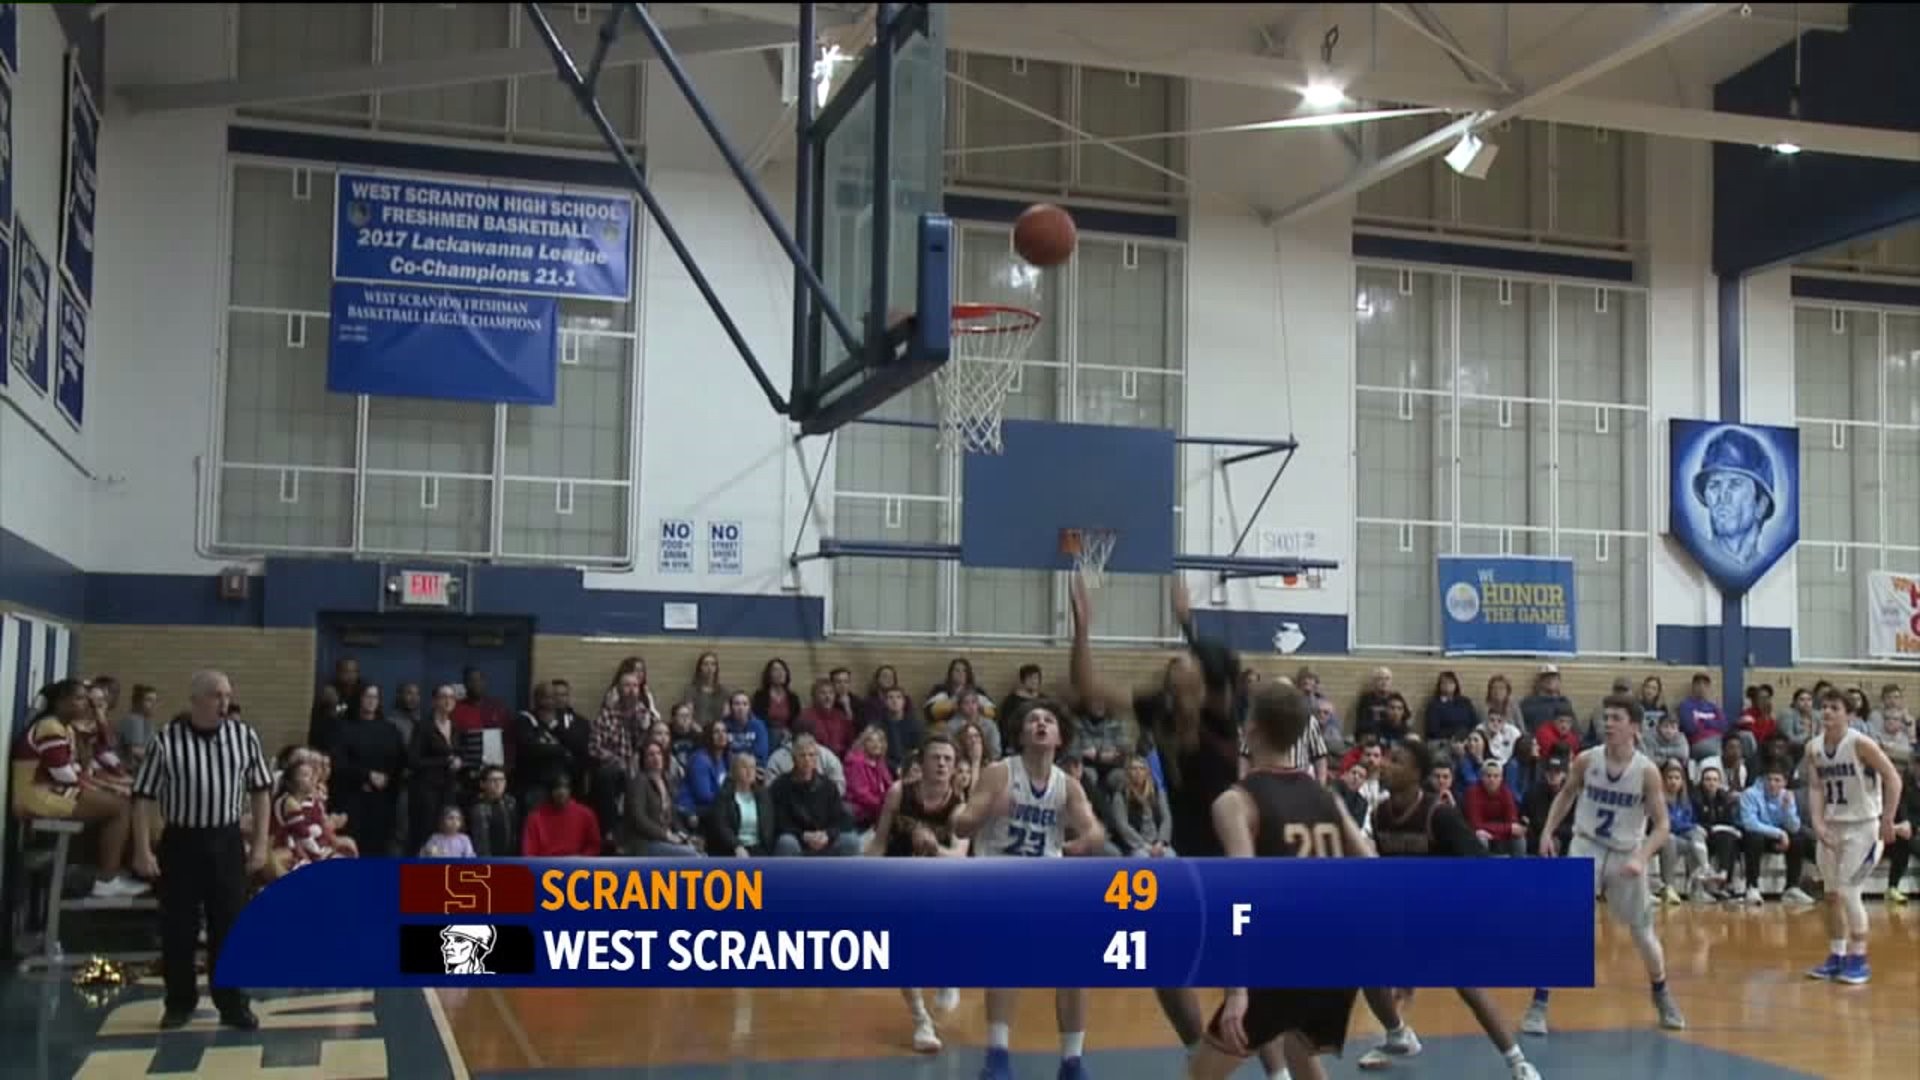 Scranton vs West Scranton boys